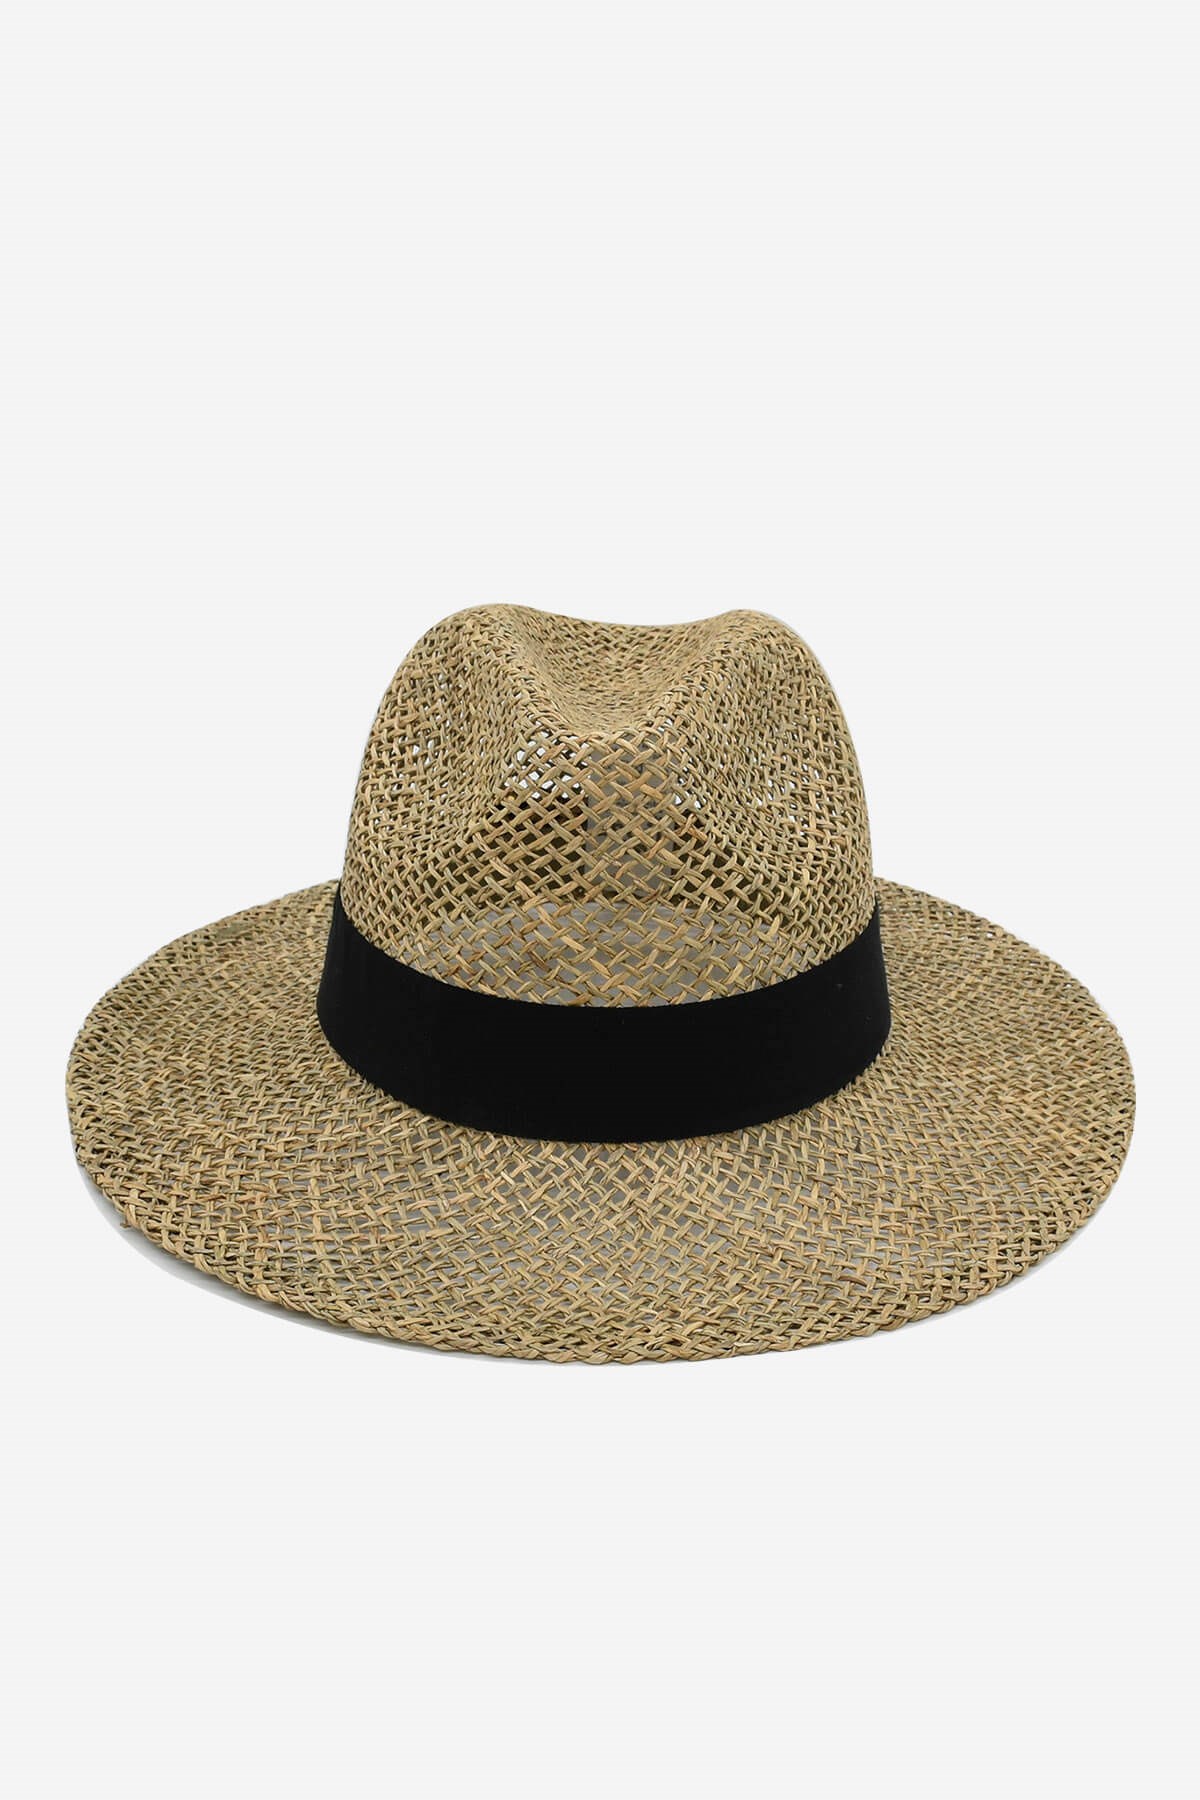 Külah Doğal Yosun Hasır Panama Şapka KLH0297